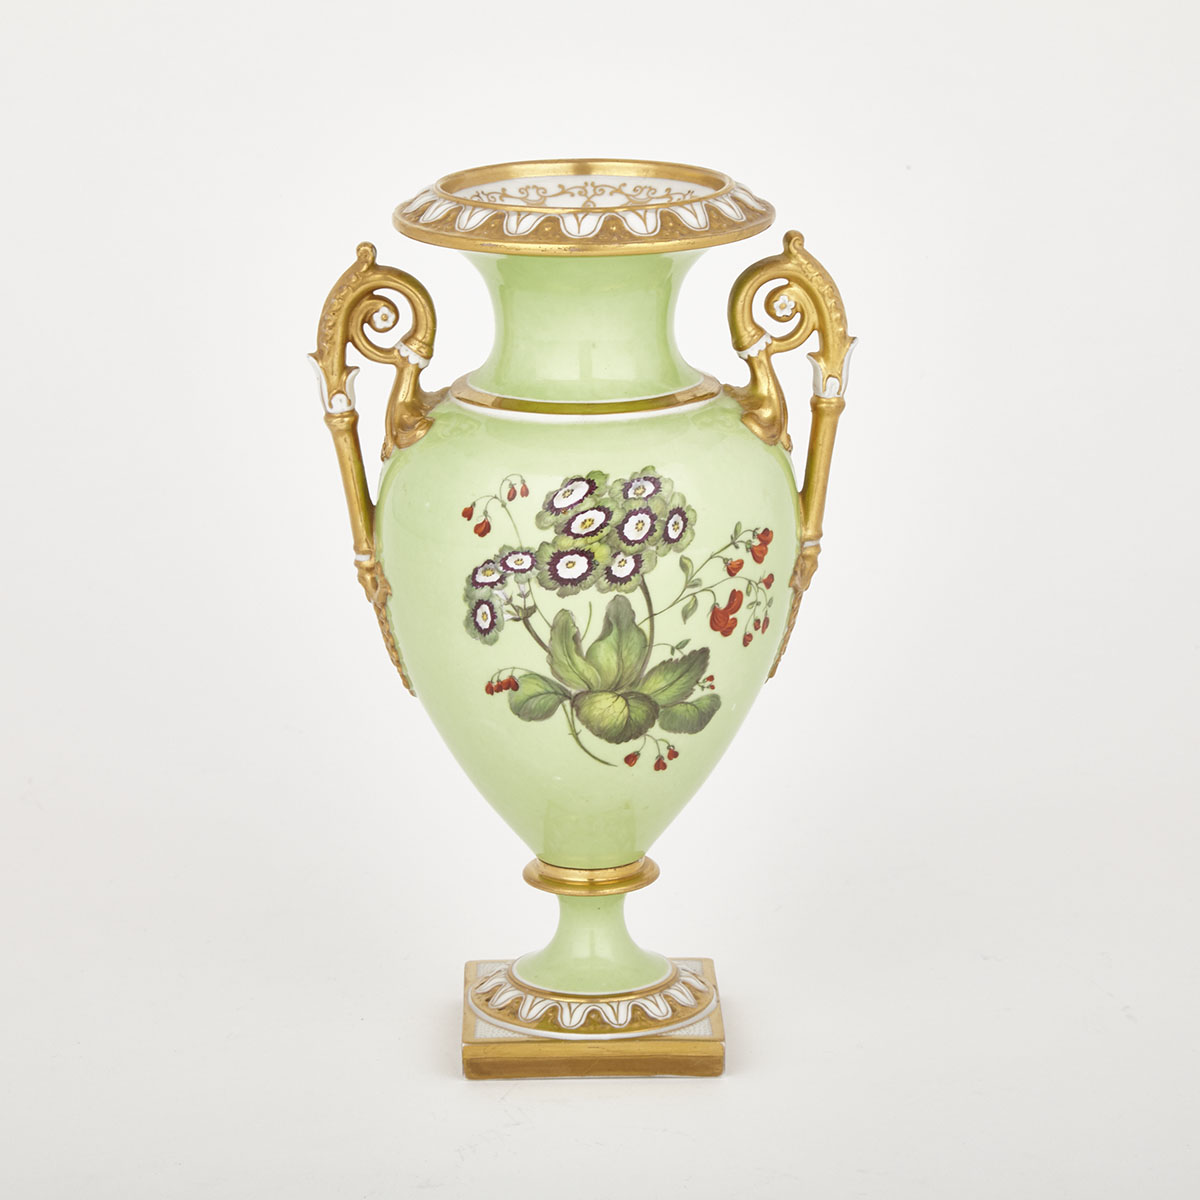 Flight, Barr & Barr Worcester Two-Handled Vase, c.1813-40